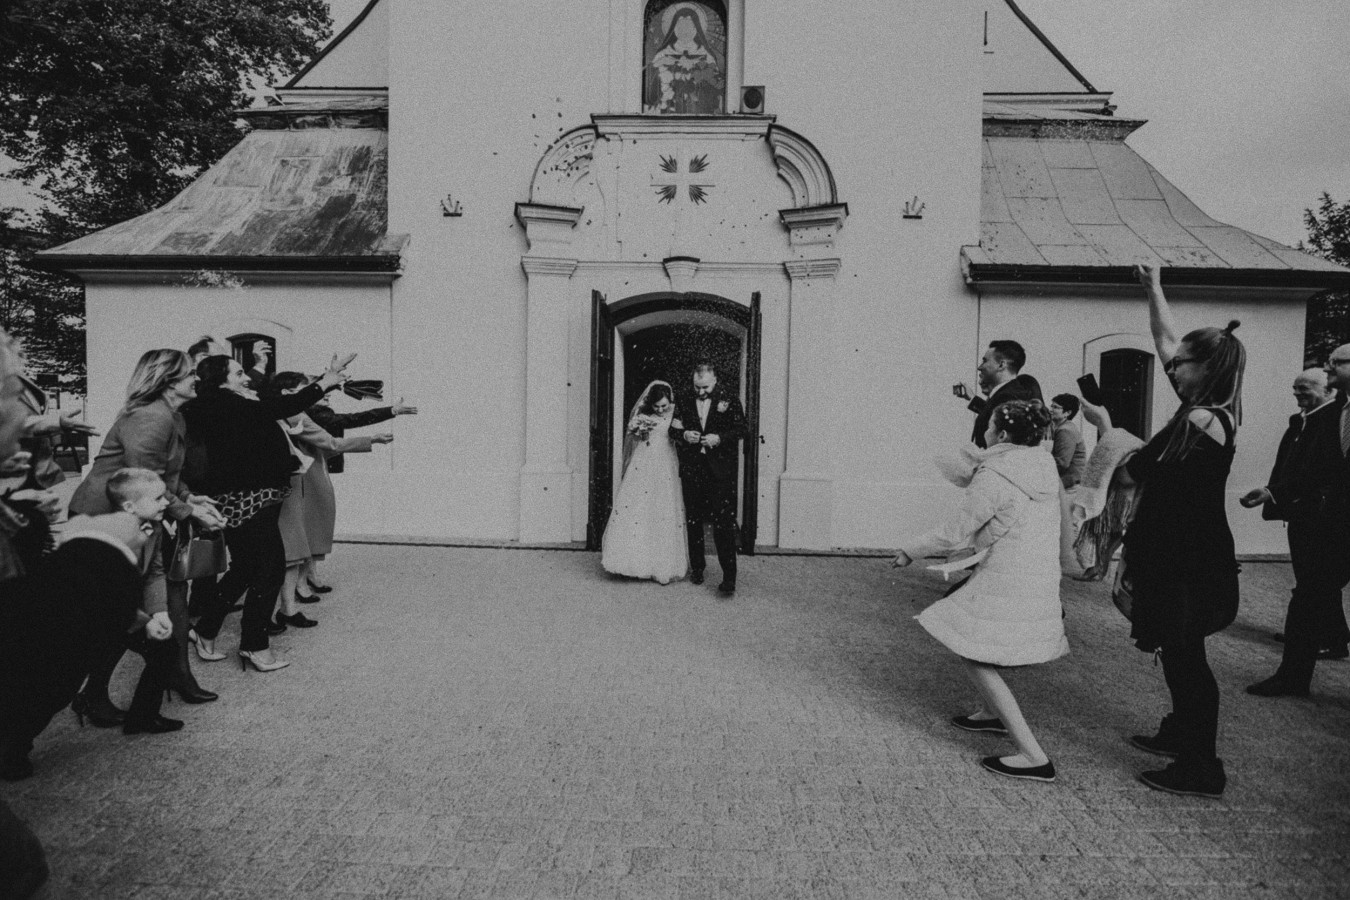 zdjęcia wroclaw fotograf follow-love portfolio zdjecia slubne inspiracje wesele plener slubny sesja slubna